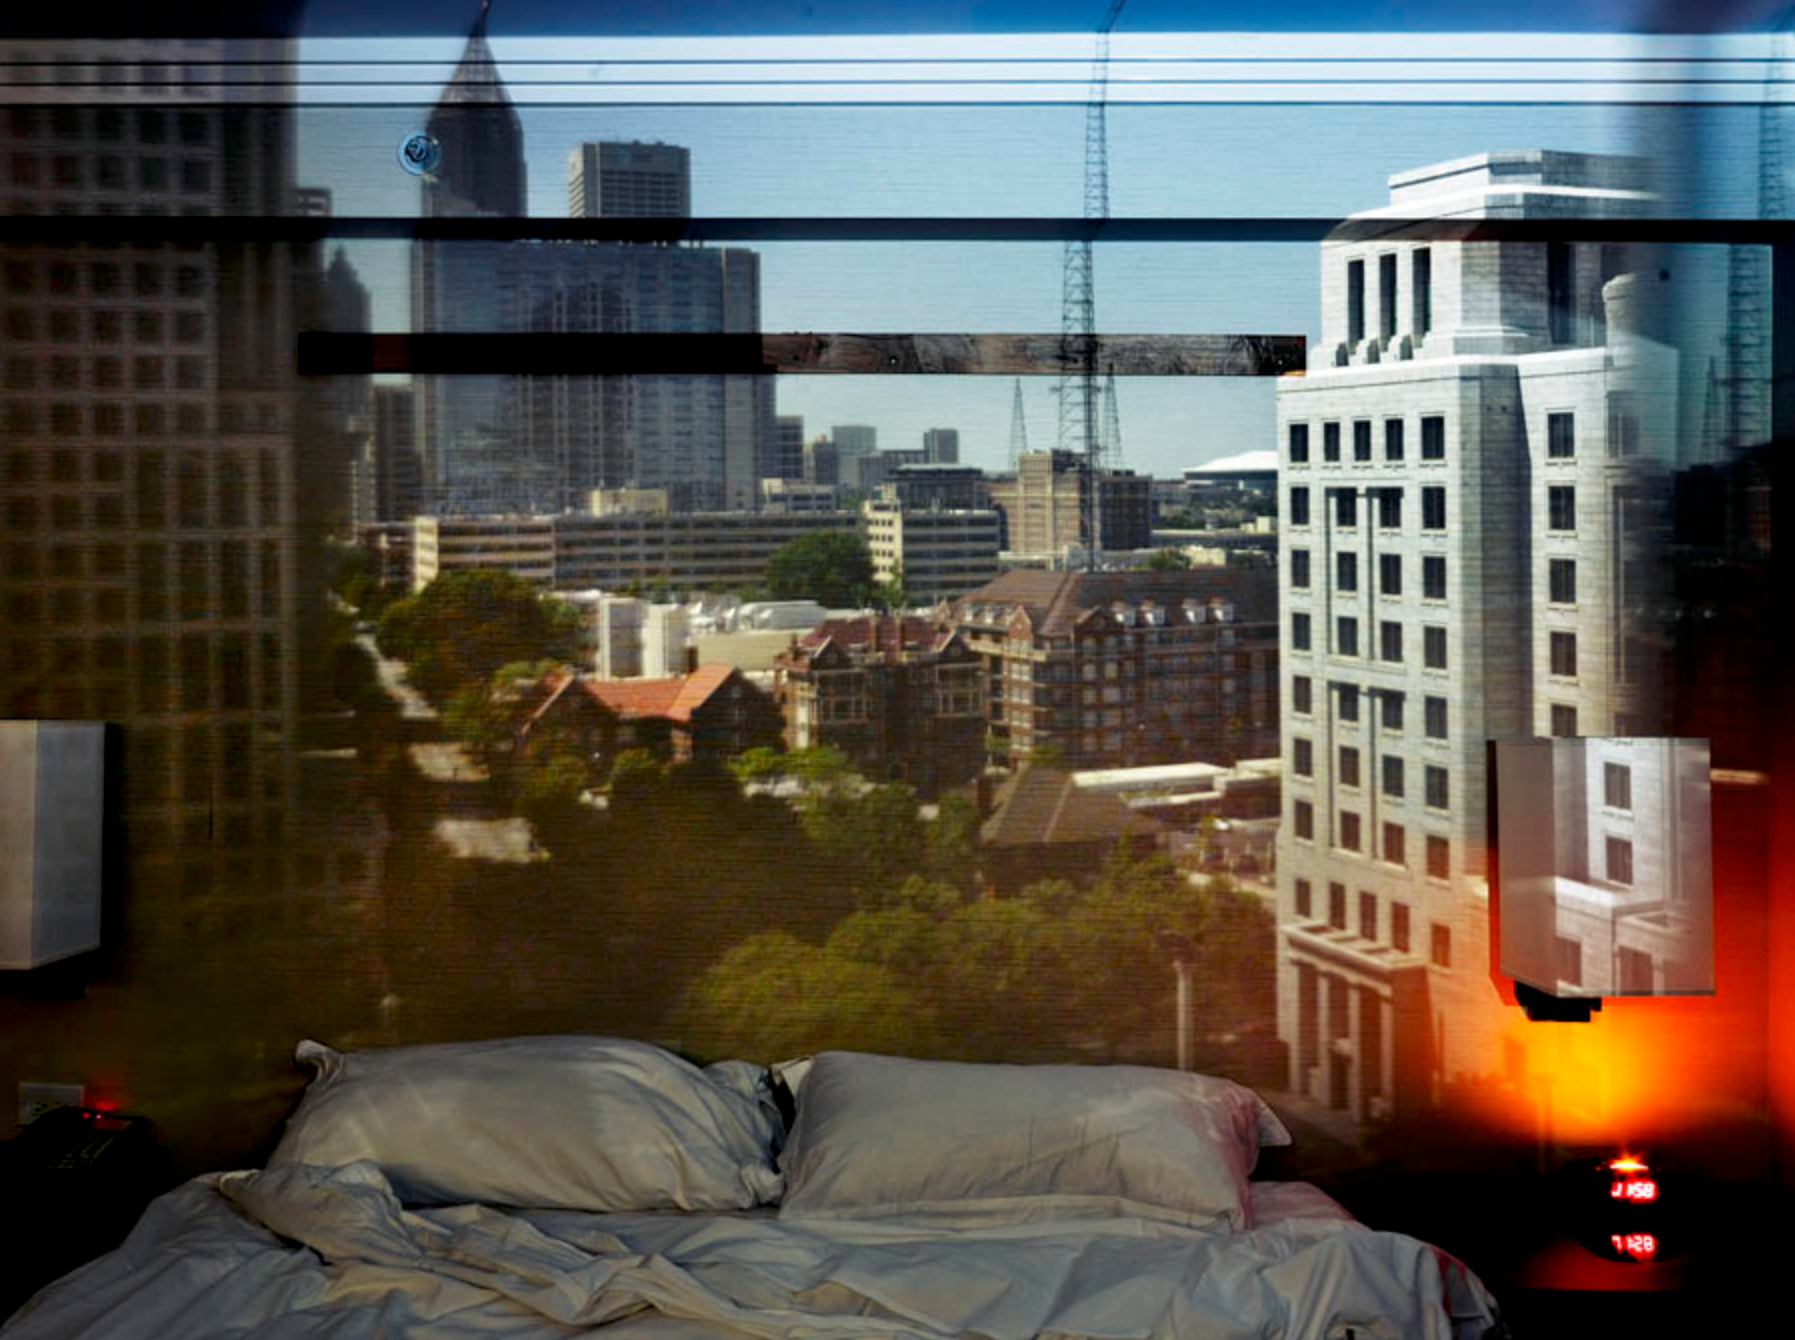 âCamera Obscura: View of Atlanta Looking South Down Peachtree Street in Hotel Room, 2013.â